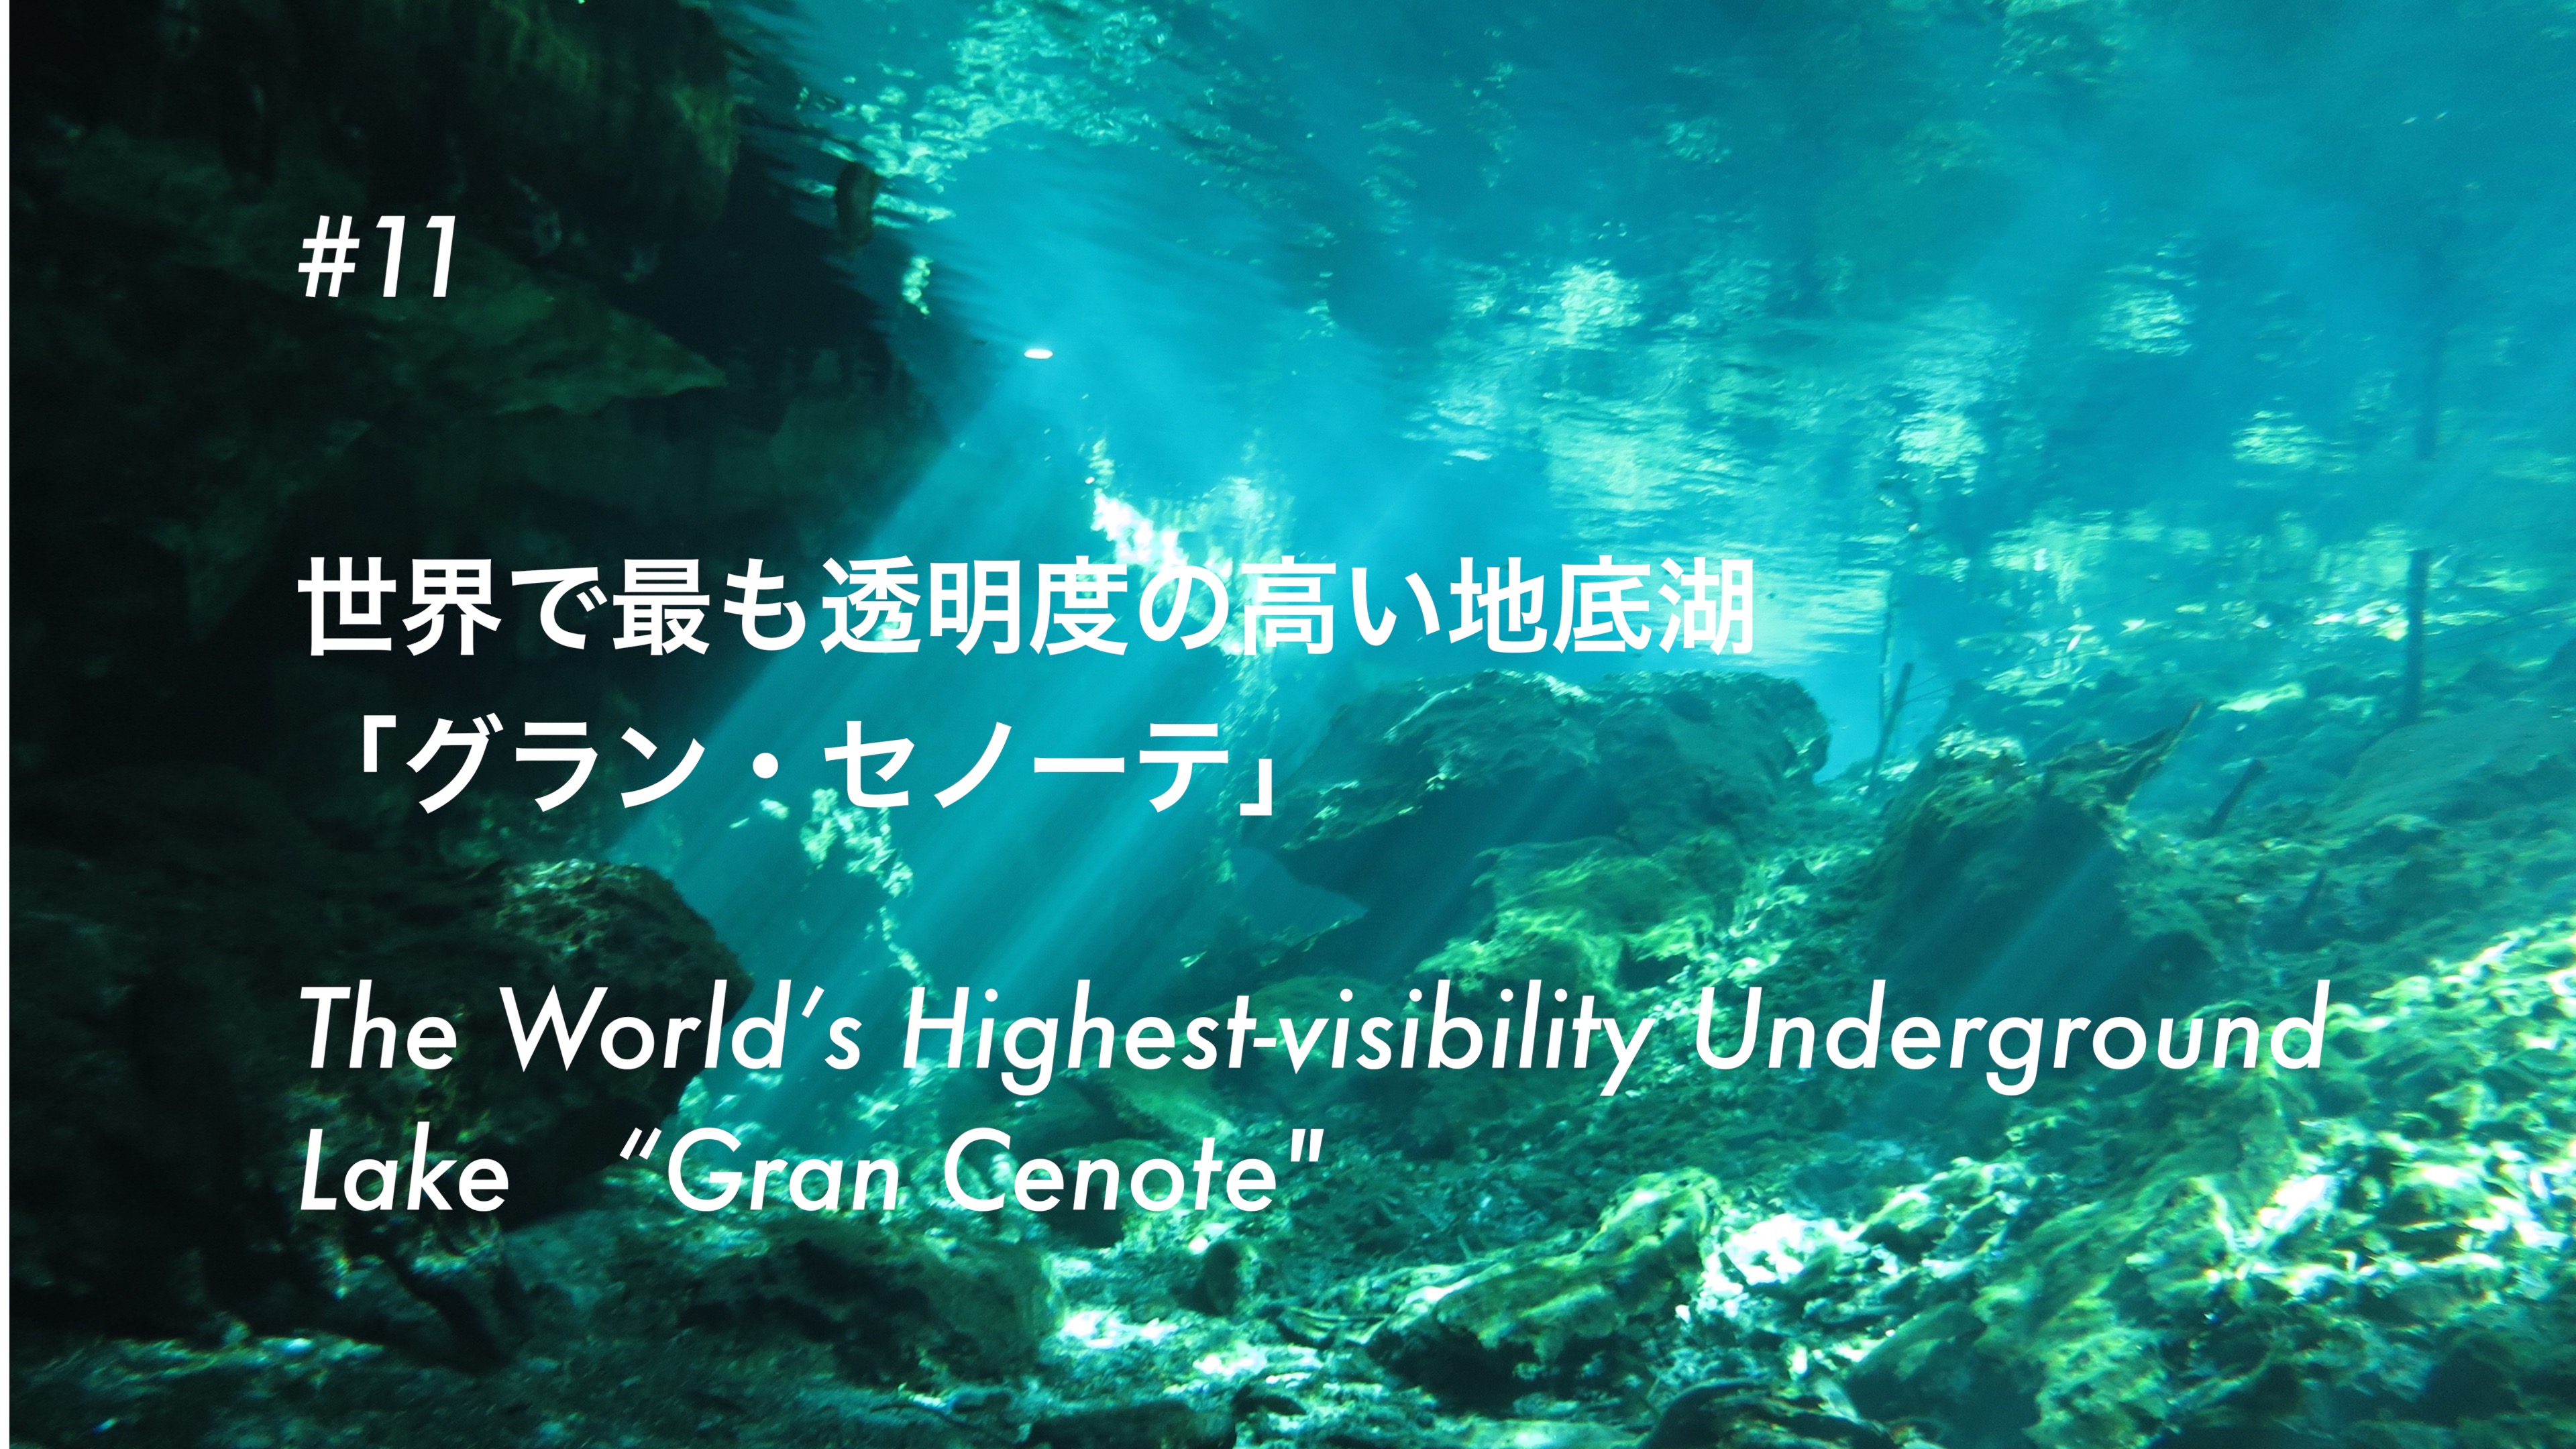 #11 世界で最も透明度の高い地底湖 「グラン・セノーテ」- The World’s Most Visible Underground Lake “Gran Cenote”